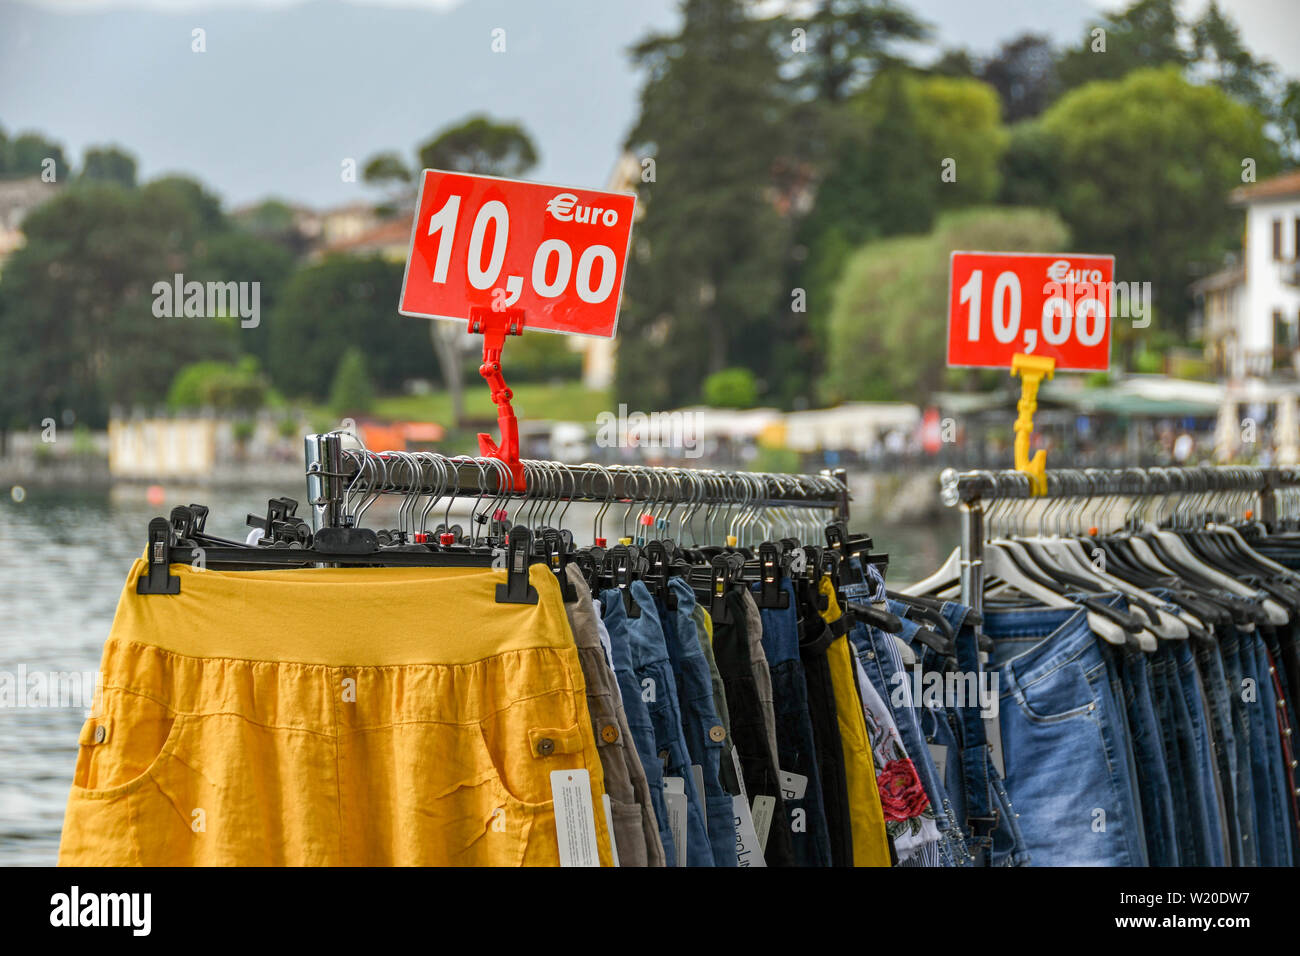 LENNO, LAGO DI COMO, Italia - Giugno 2019: articoli di abbigliamento in vendita per 10 euro su scaffalature nel mercato sul lungolago a Lenno sul Lago di Como. Foto Stock